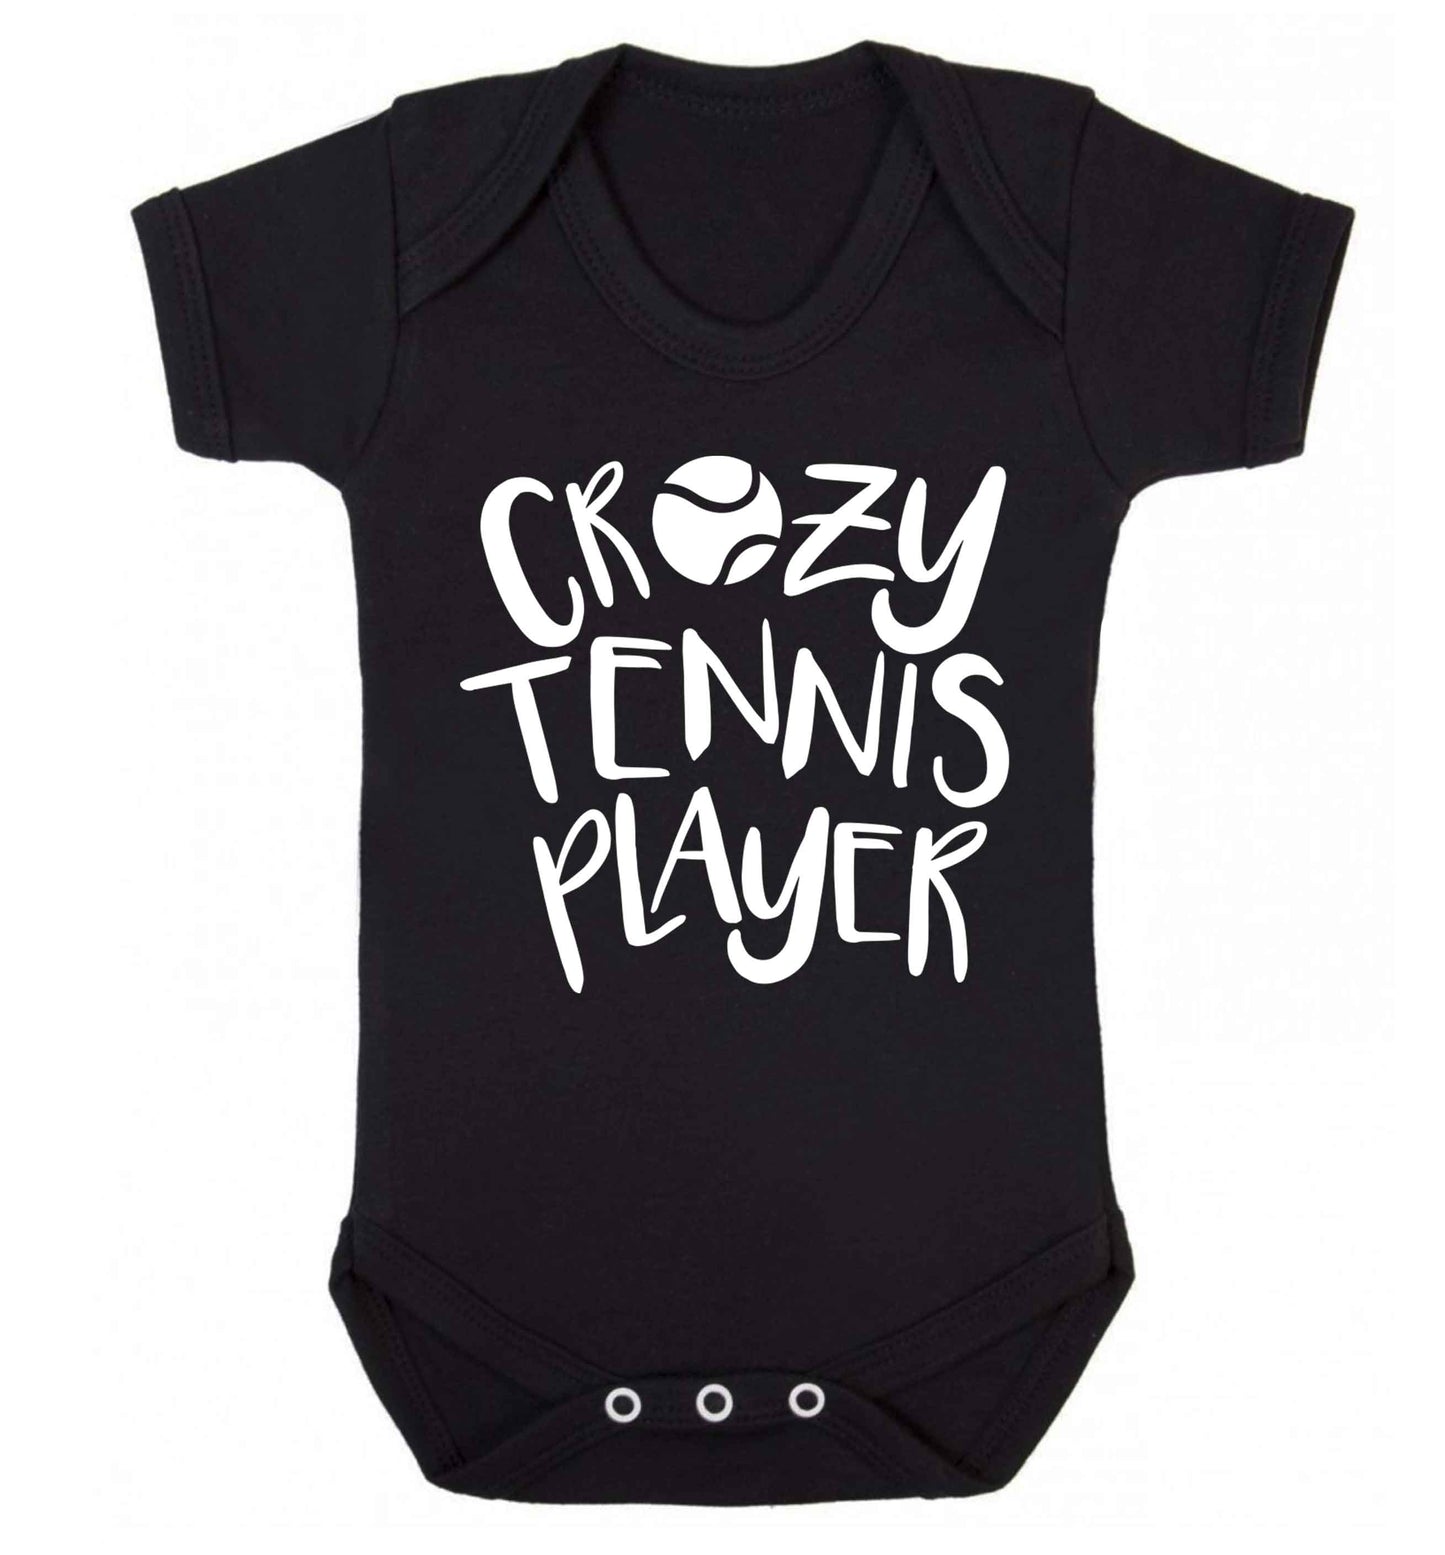 Crazy tennis player Baby Vest black 18-24 months